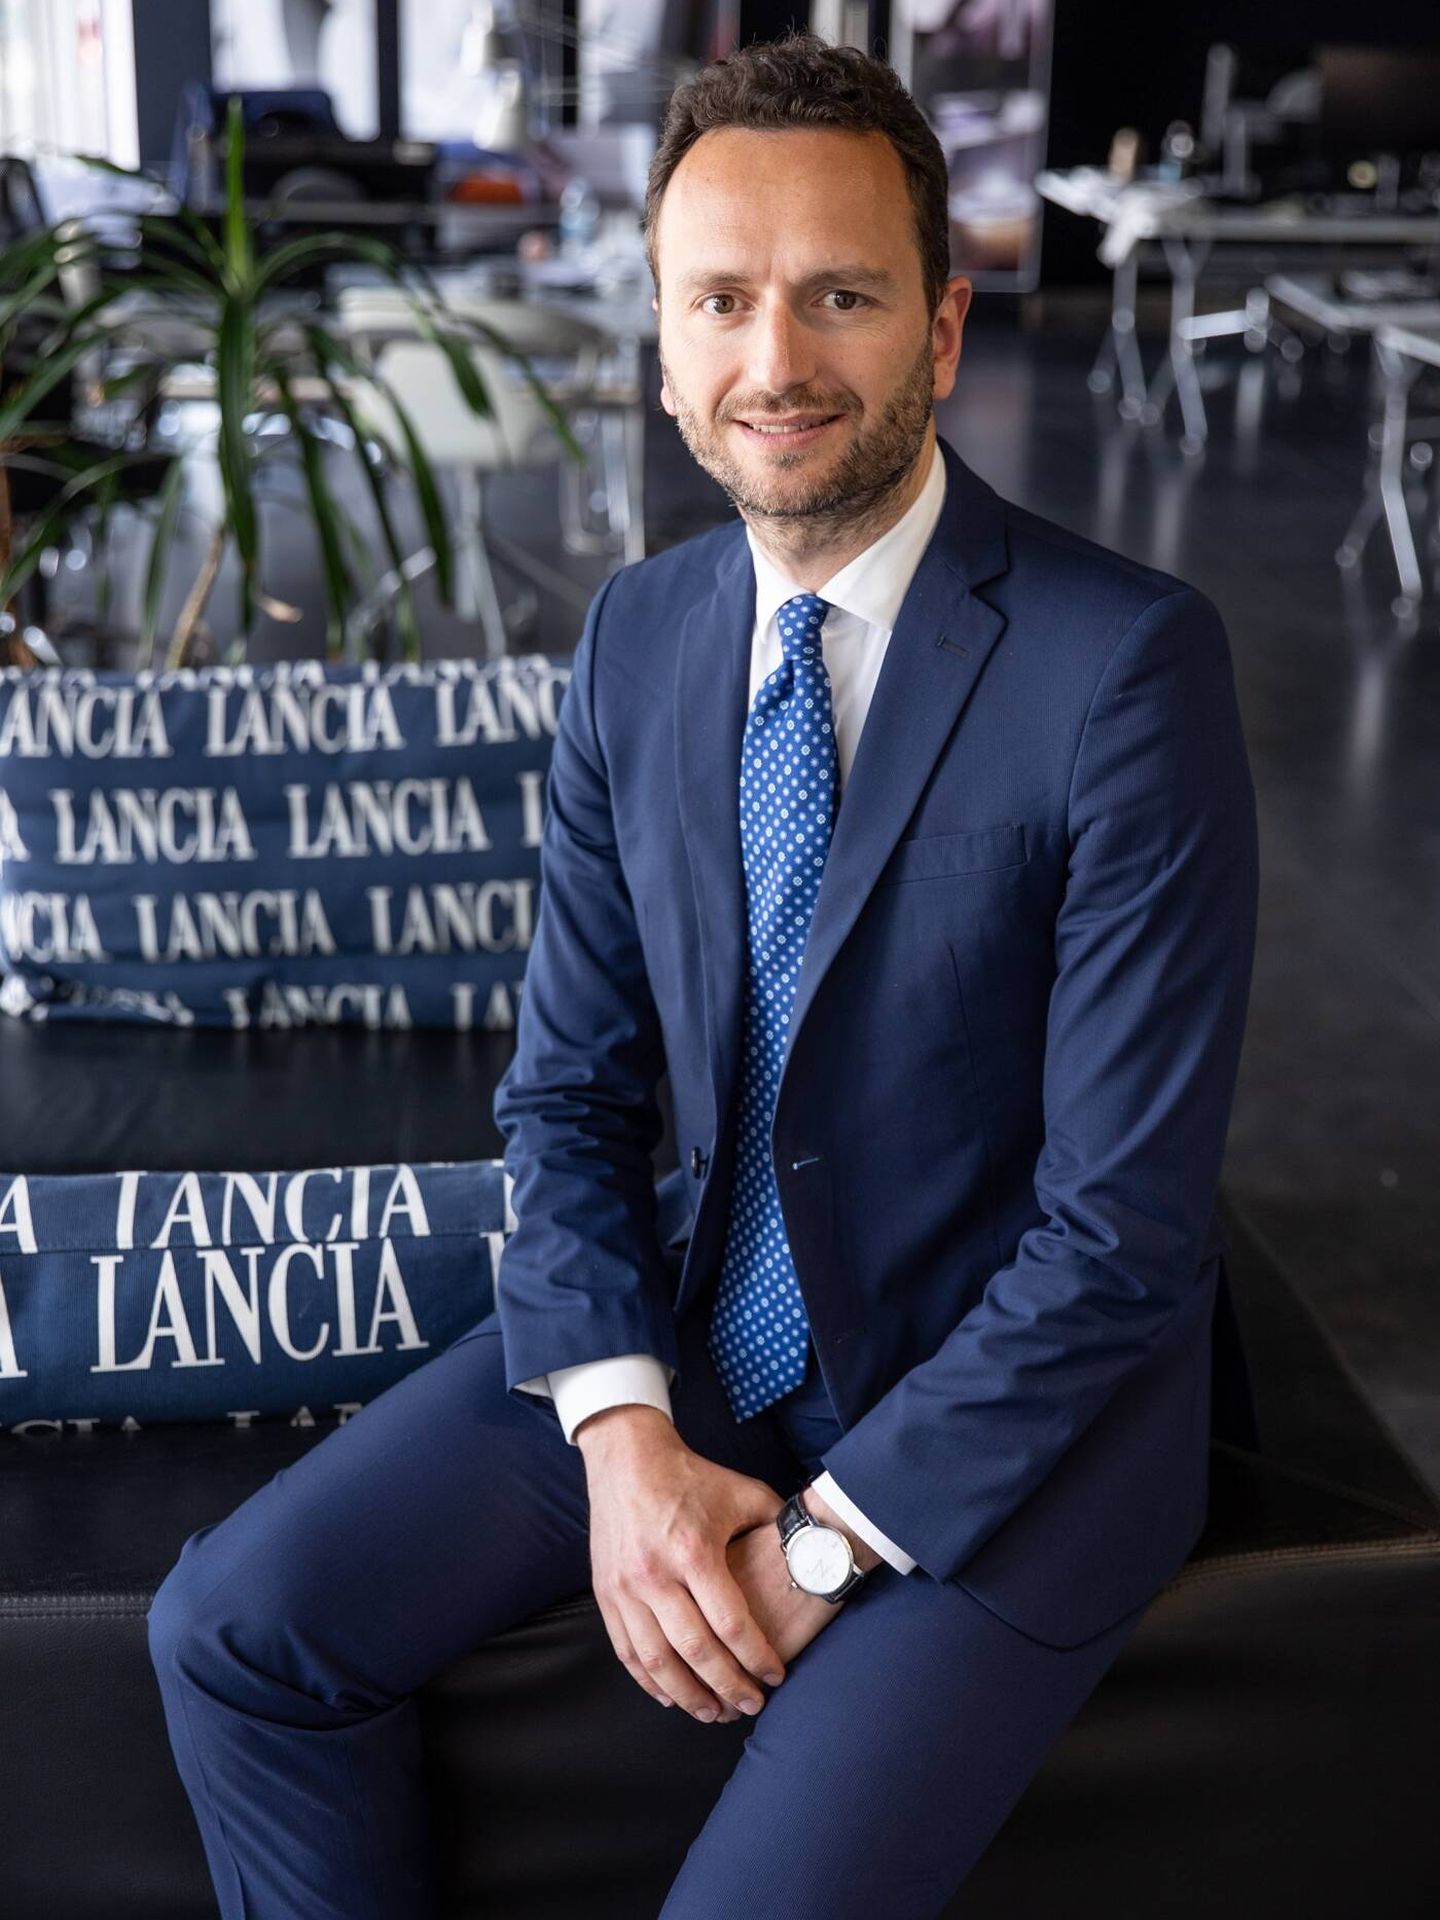 Francesco Colonnese ha sido designado director de la marca Lancia en nuestro país.